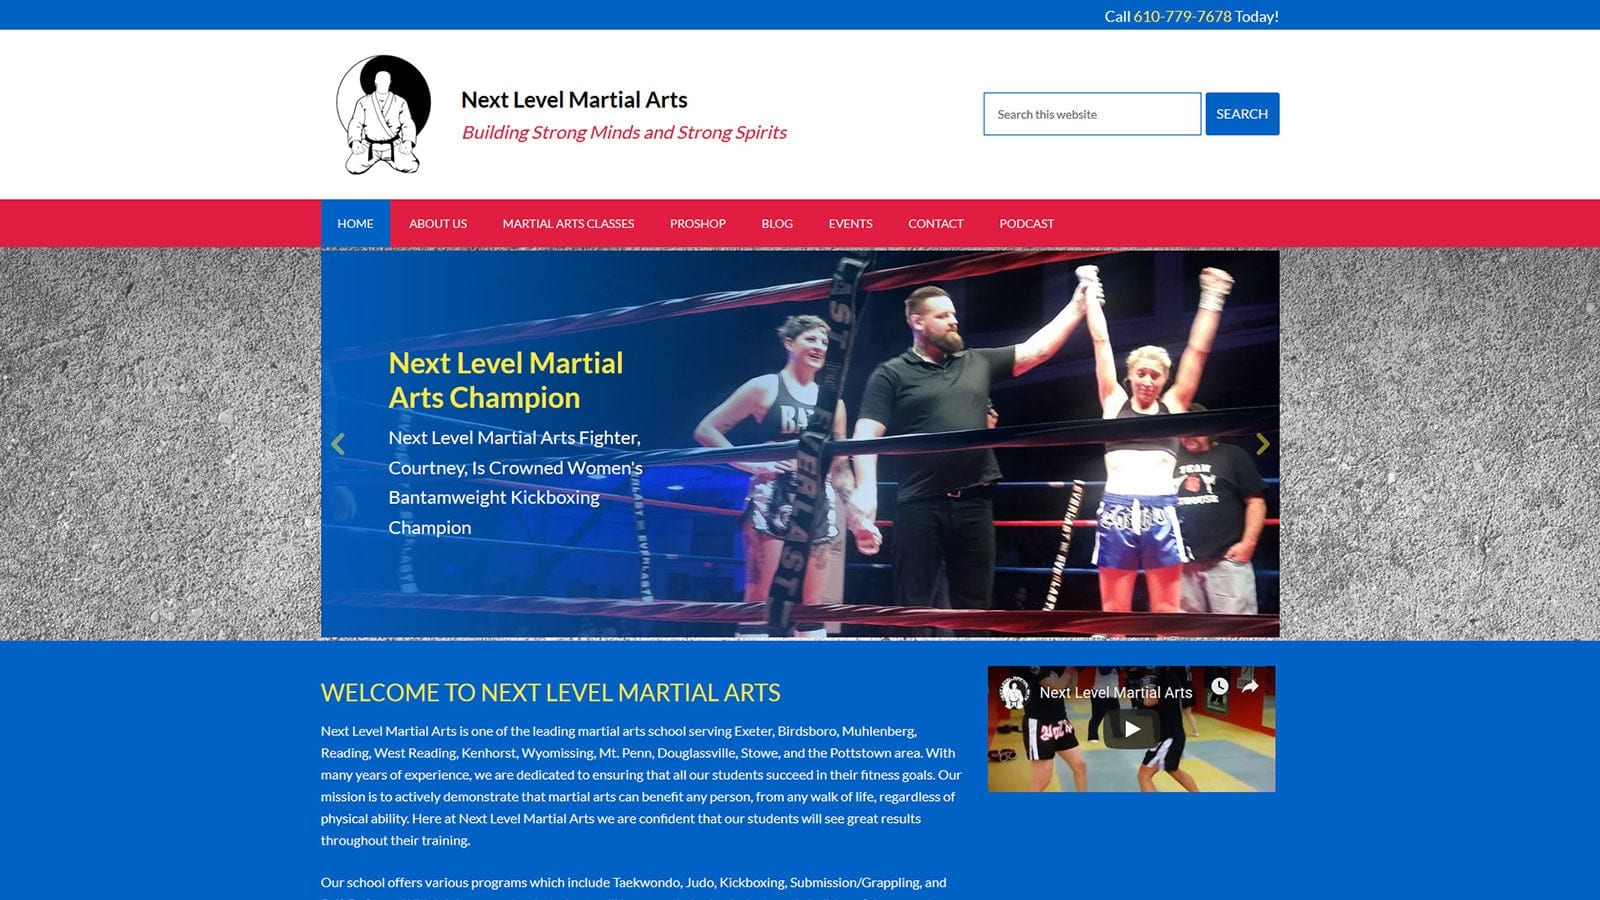 Redesign of Local Martial Arts School’s Website